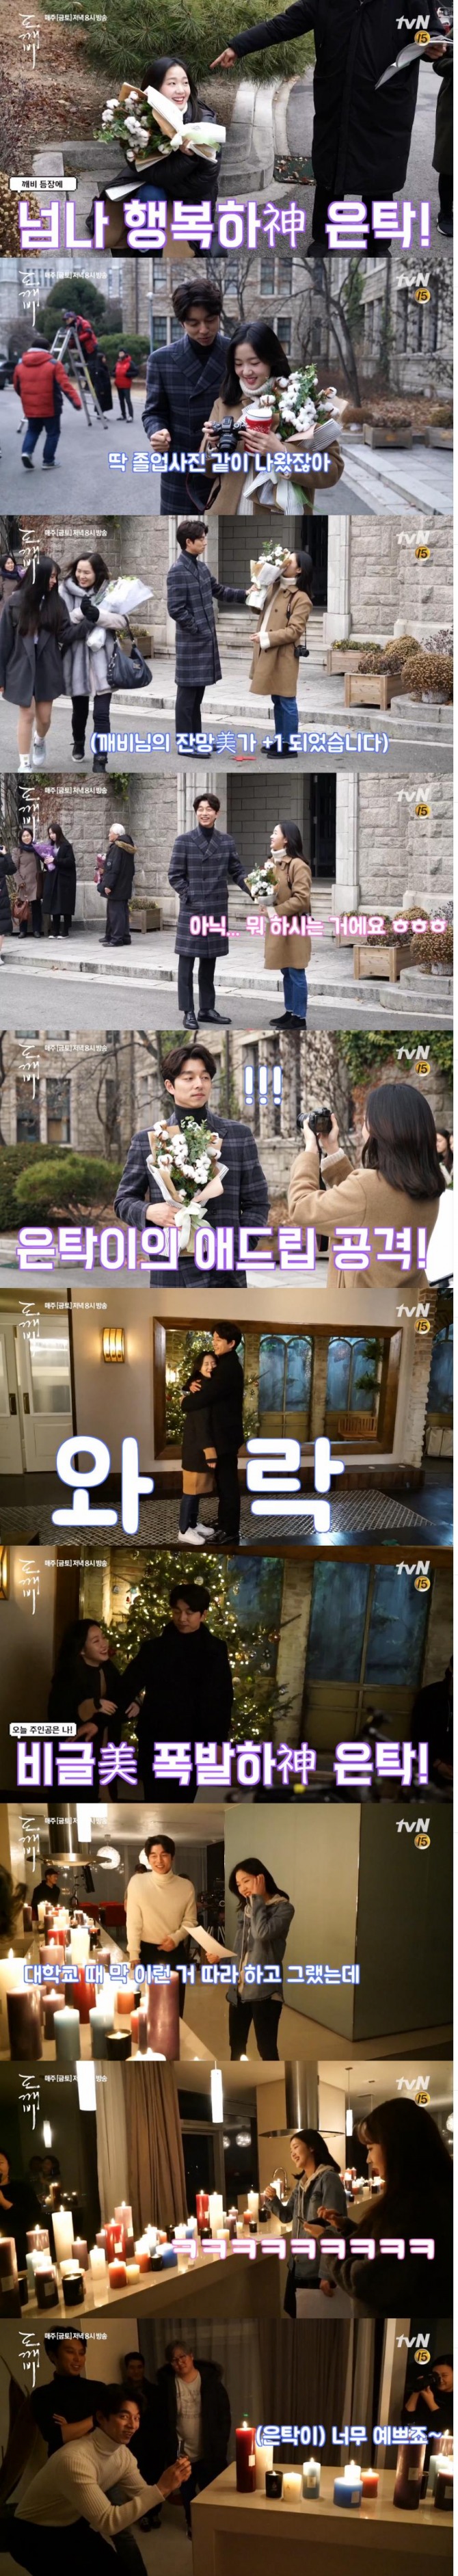 tvN 금토드라마 '도깨비' 제작진이 10일 '비글미 대폭발 신탁 커플'이라는 제목의 메이킹 영상을 공개했다./사진=tvN영상 캡처